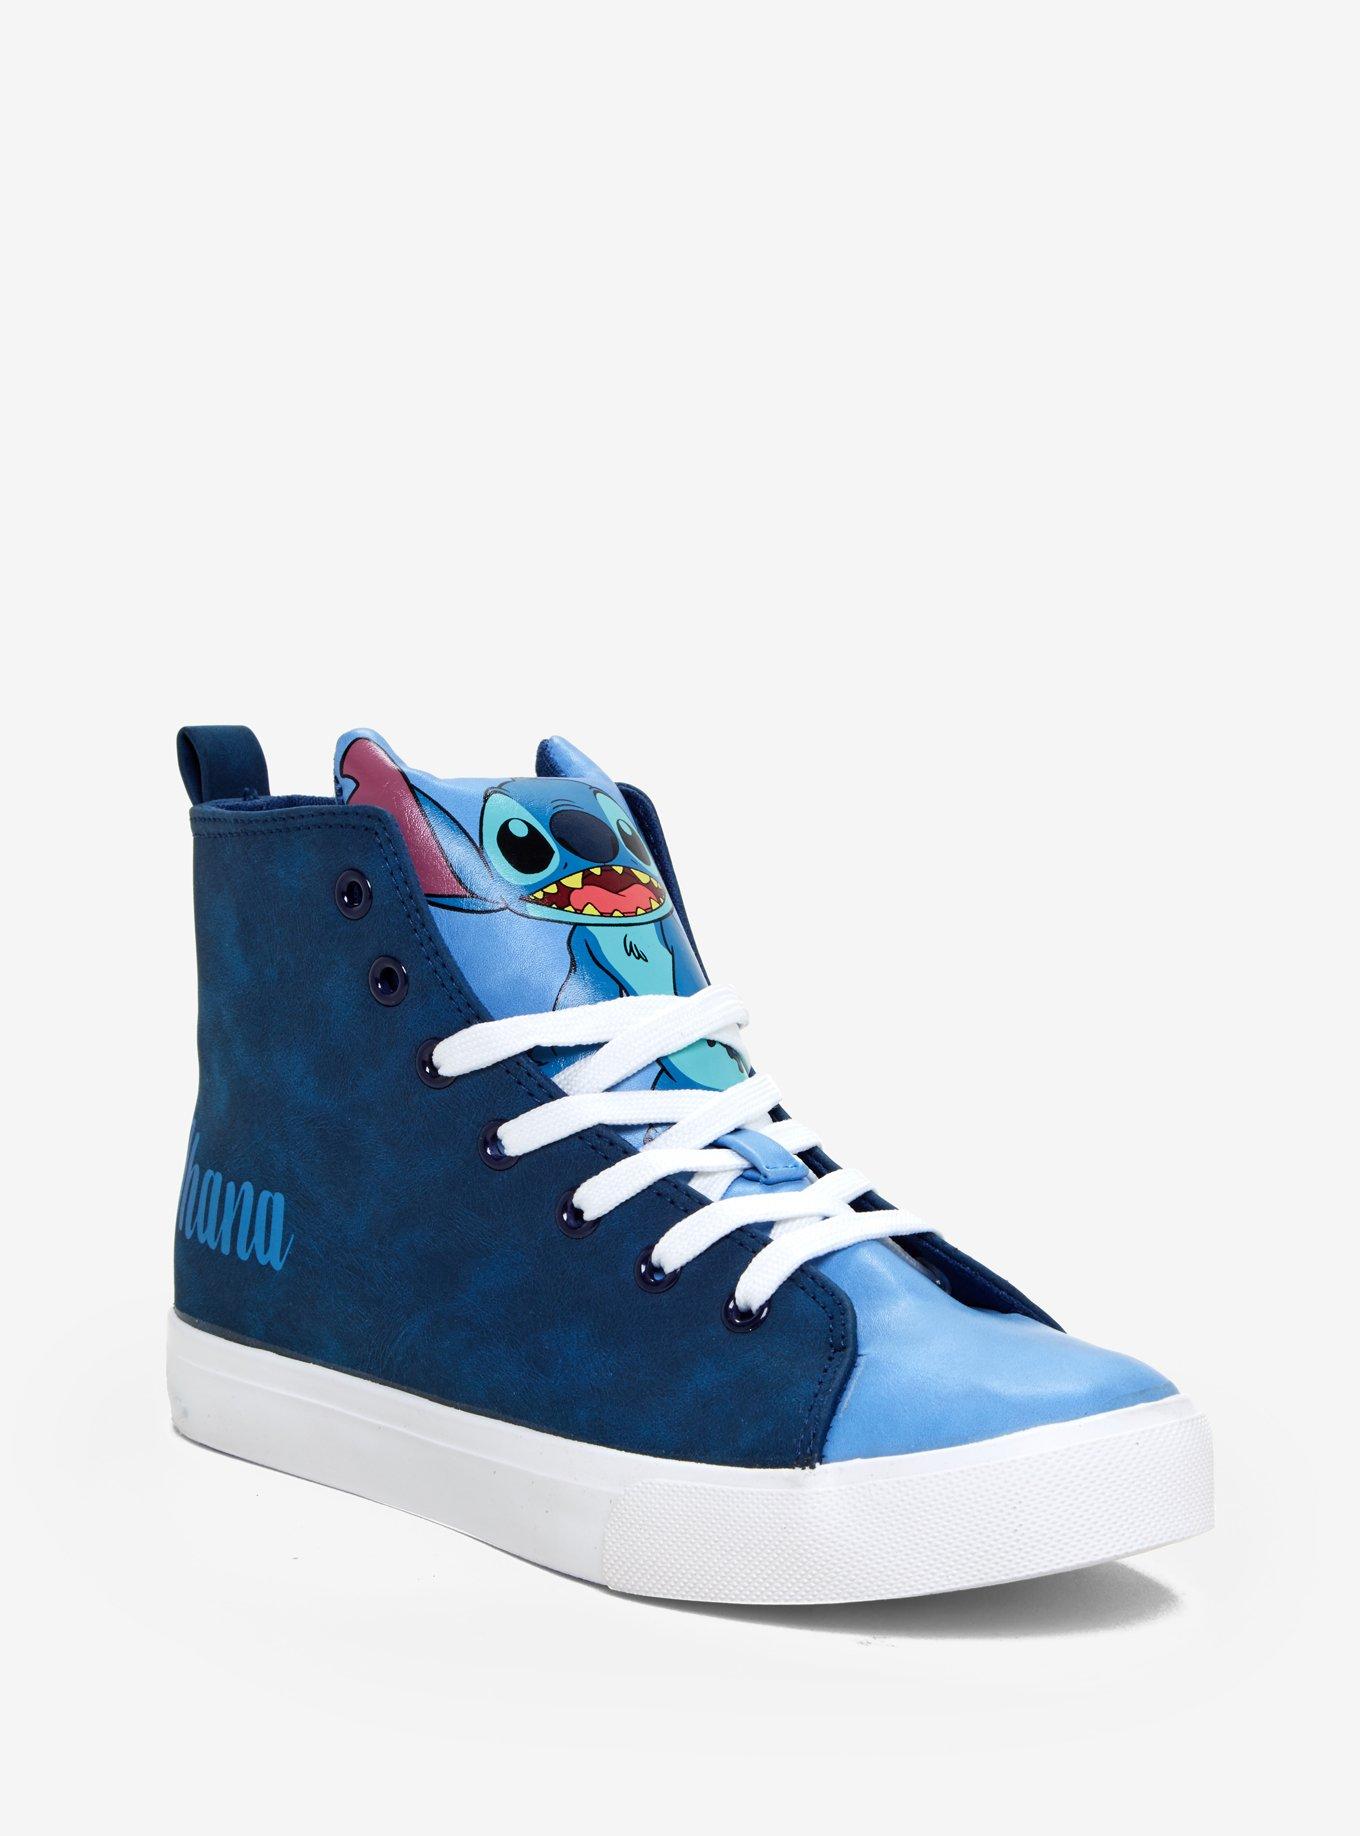 Disney Lilo & Stitch Ohana Hi-Top Sneakers, BLUE, hi-res